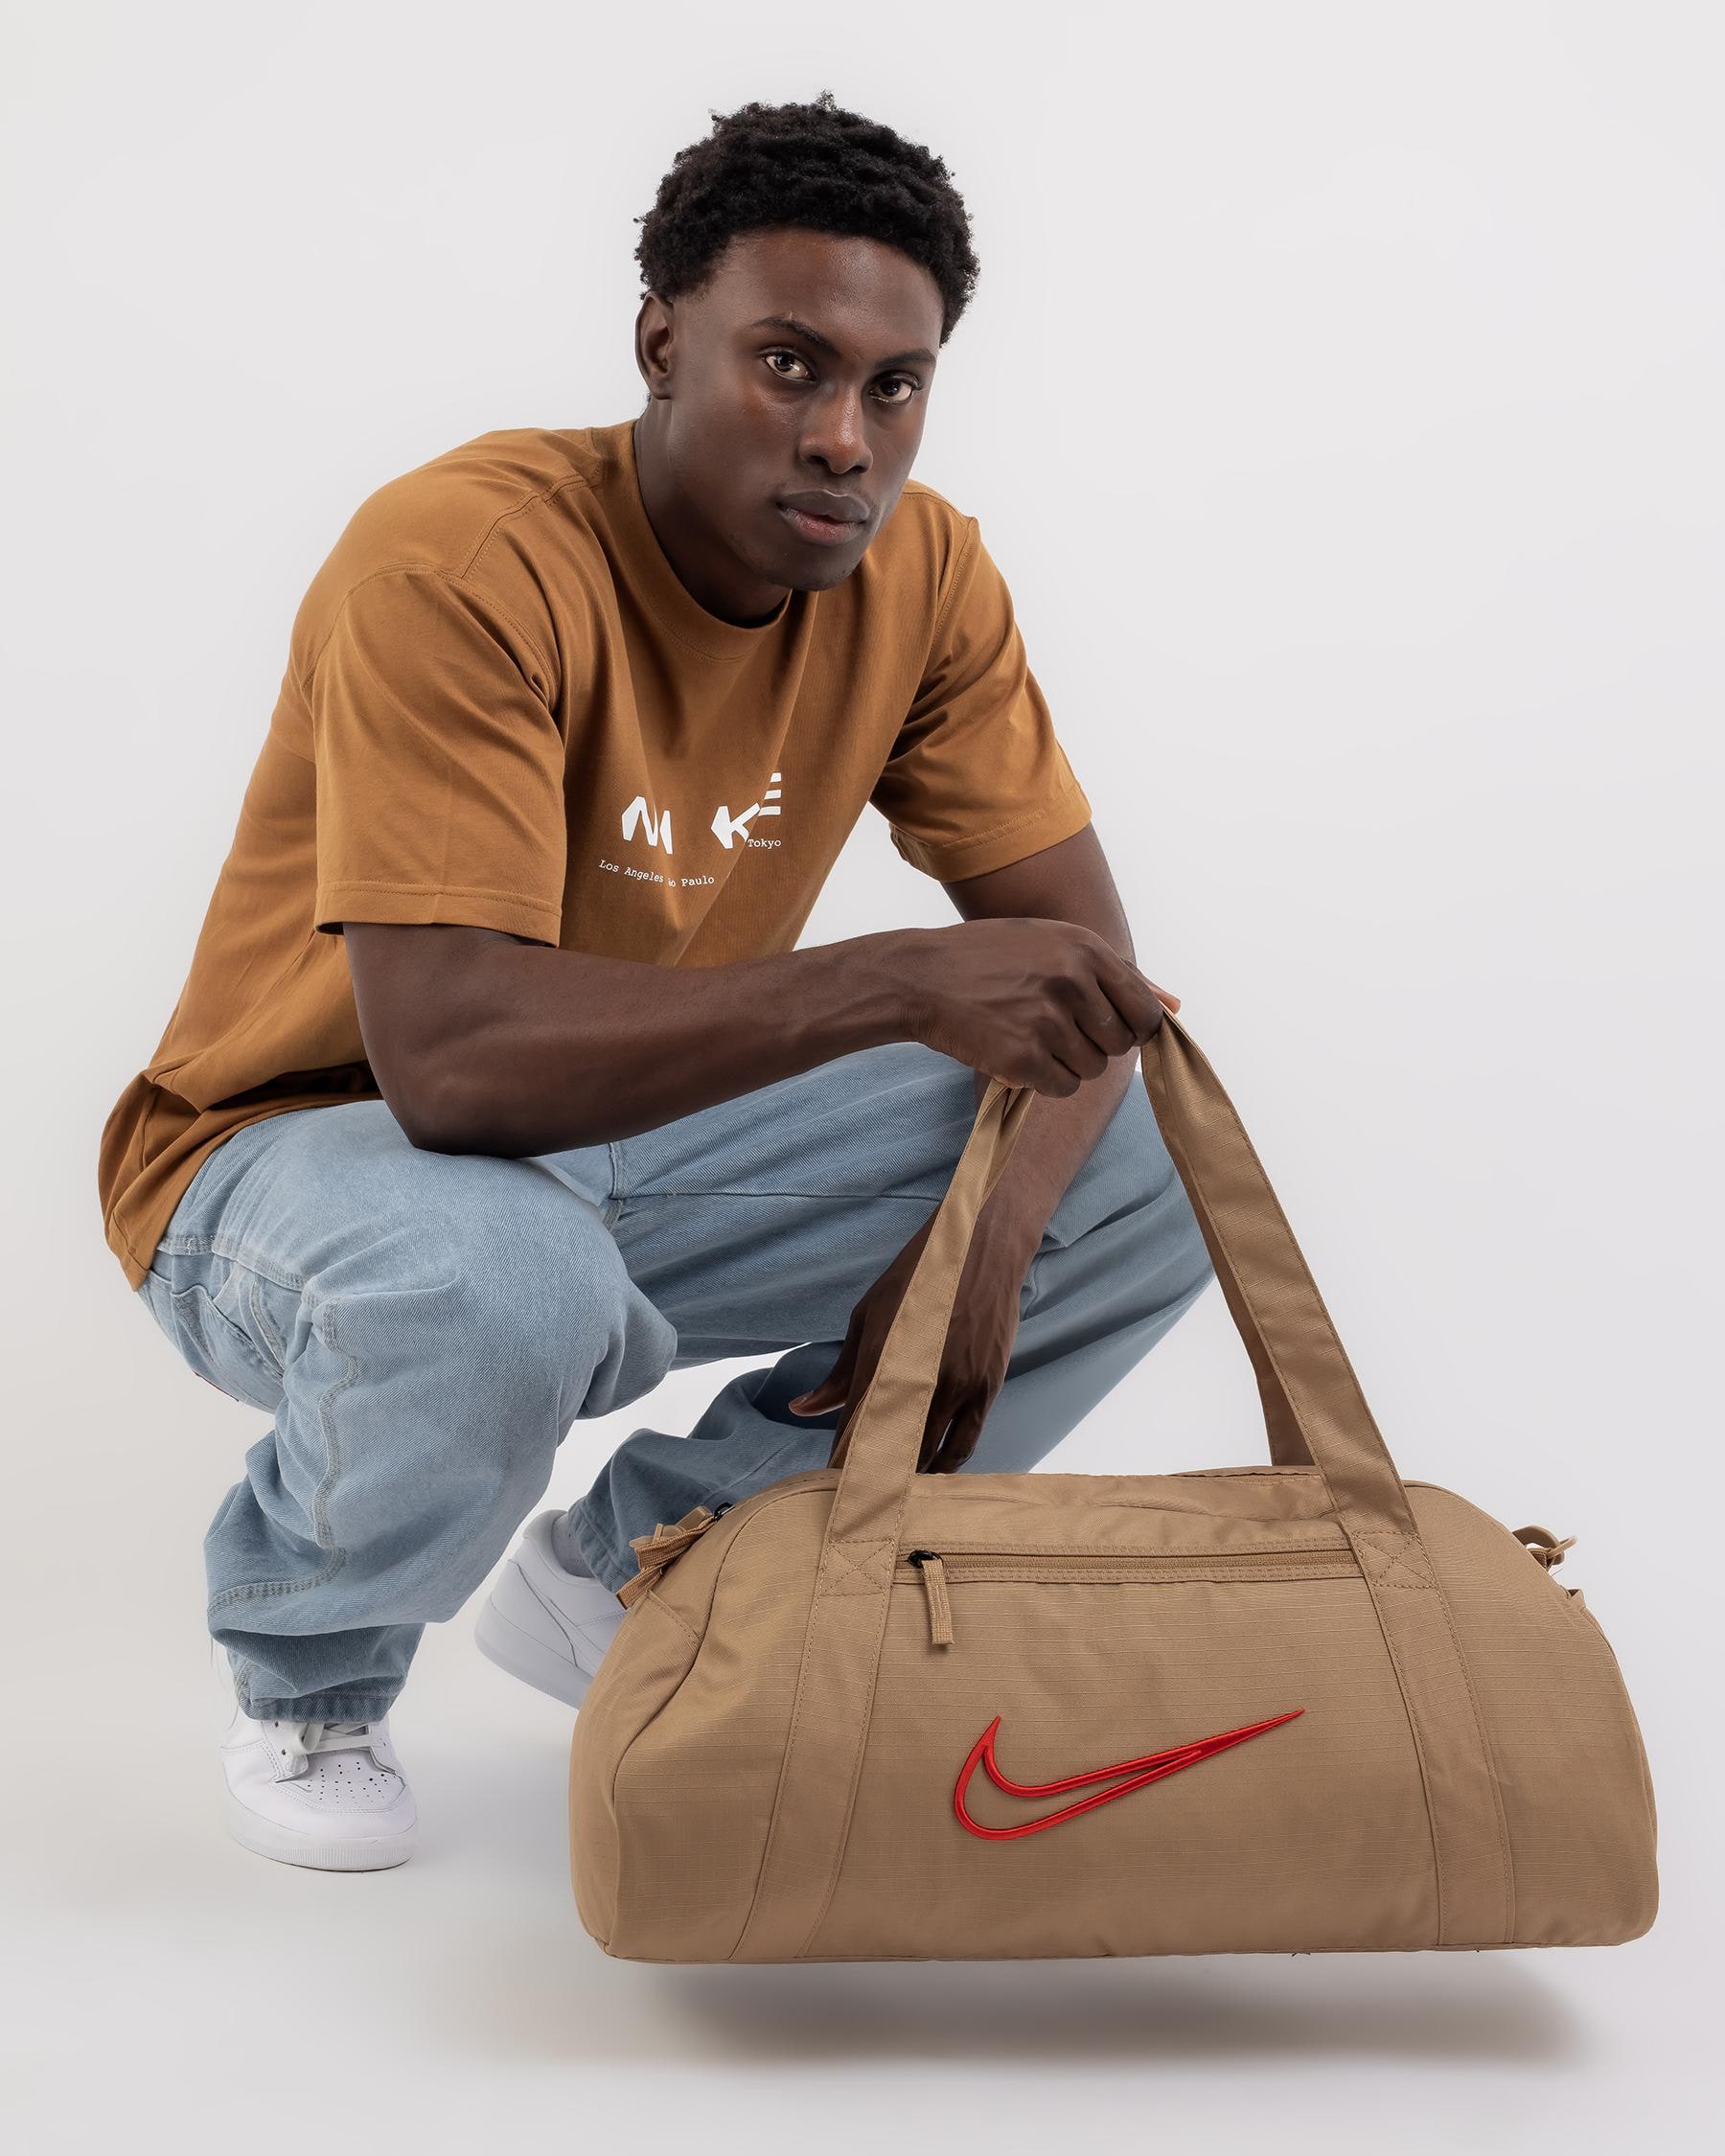 Nike 2.0 Gym Club Duffel Bag